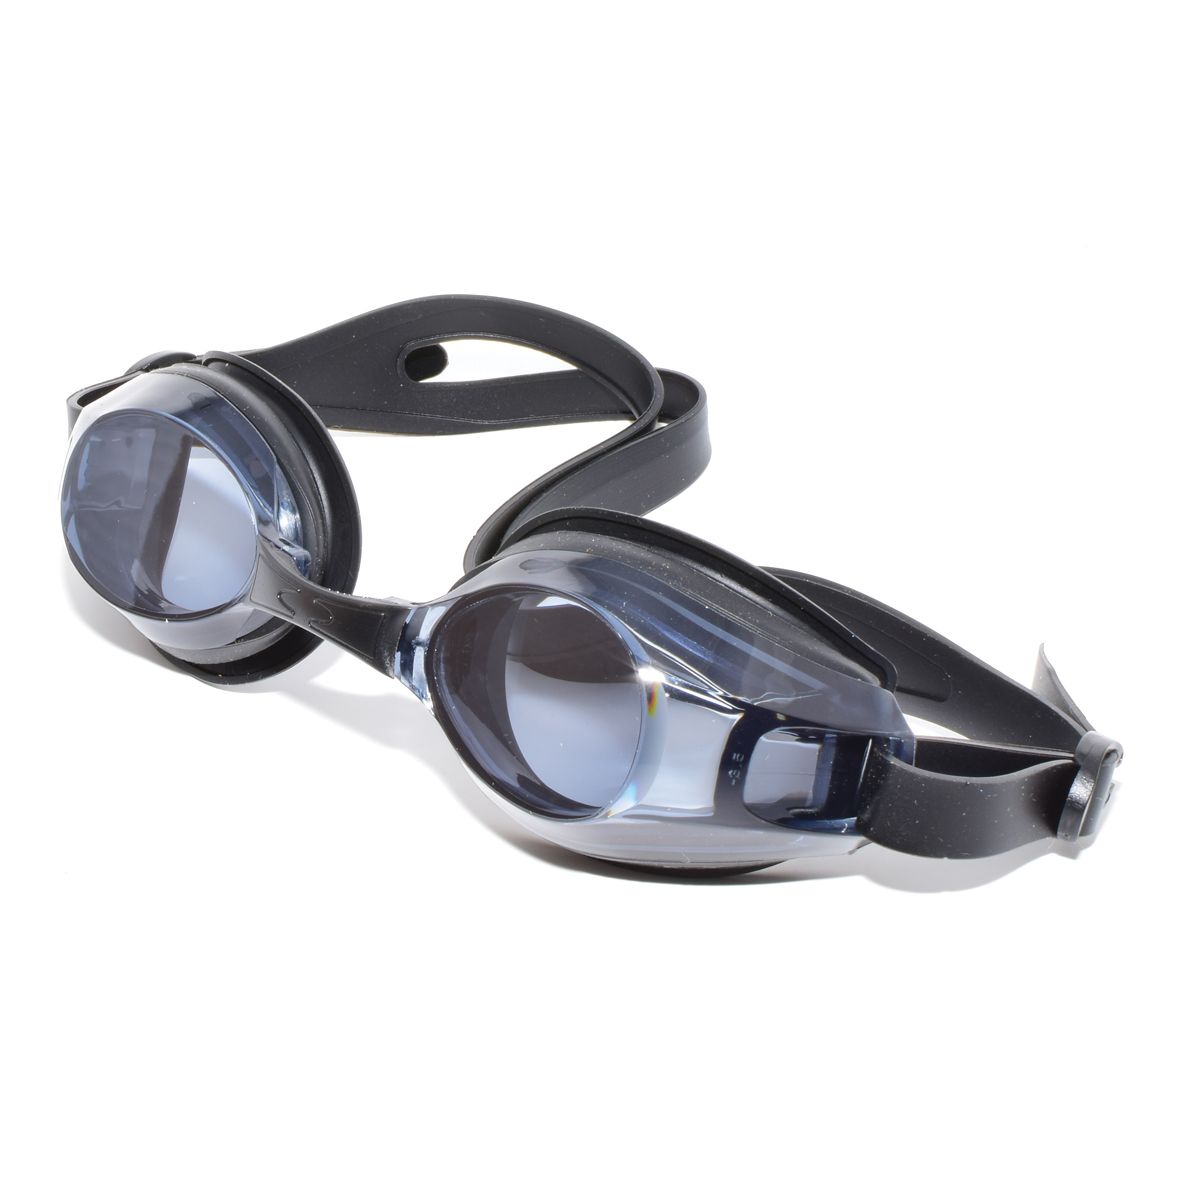 SwimFlex swimming goggles including prescription lenses